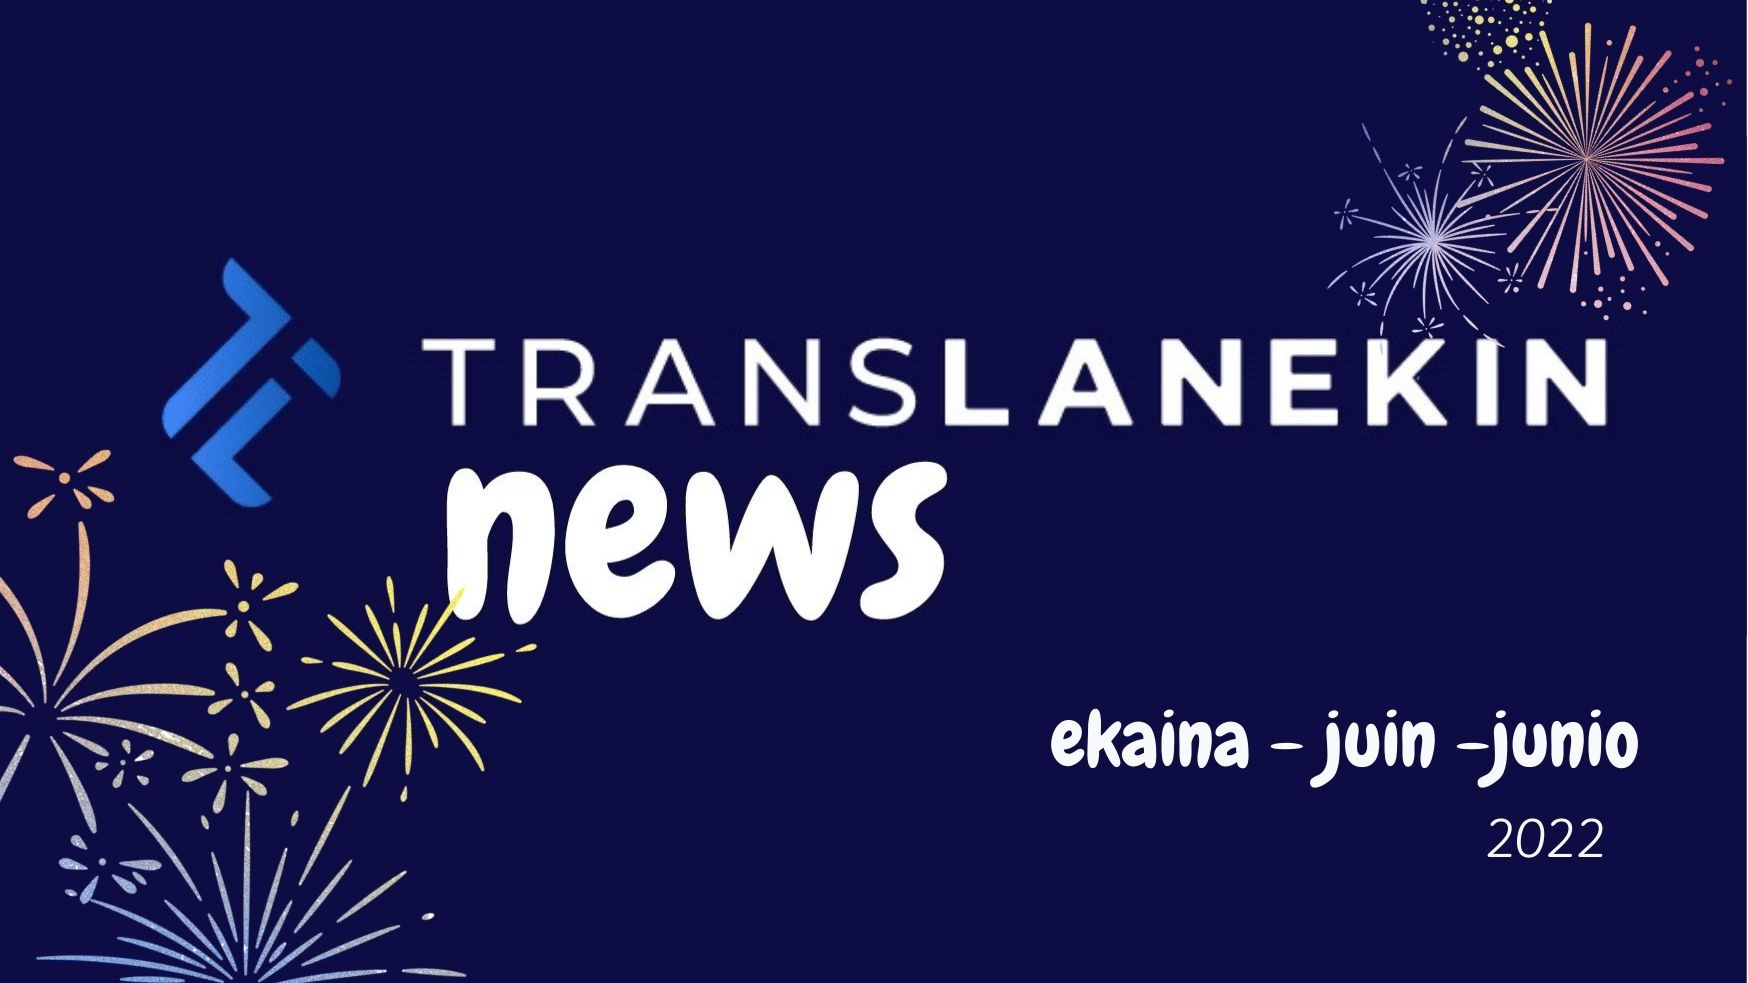 Translanekin newsletter